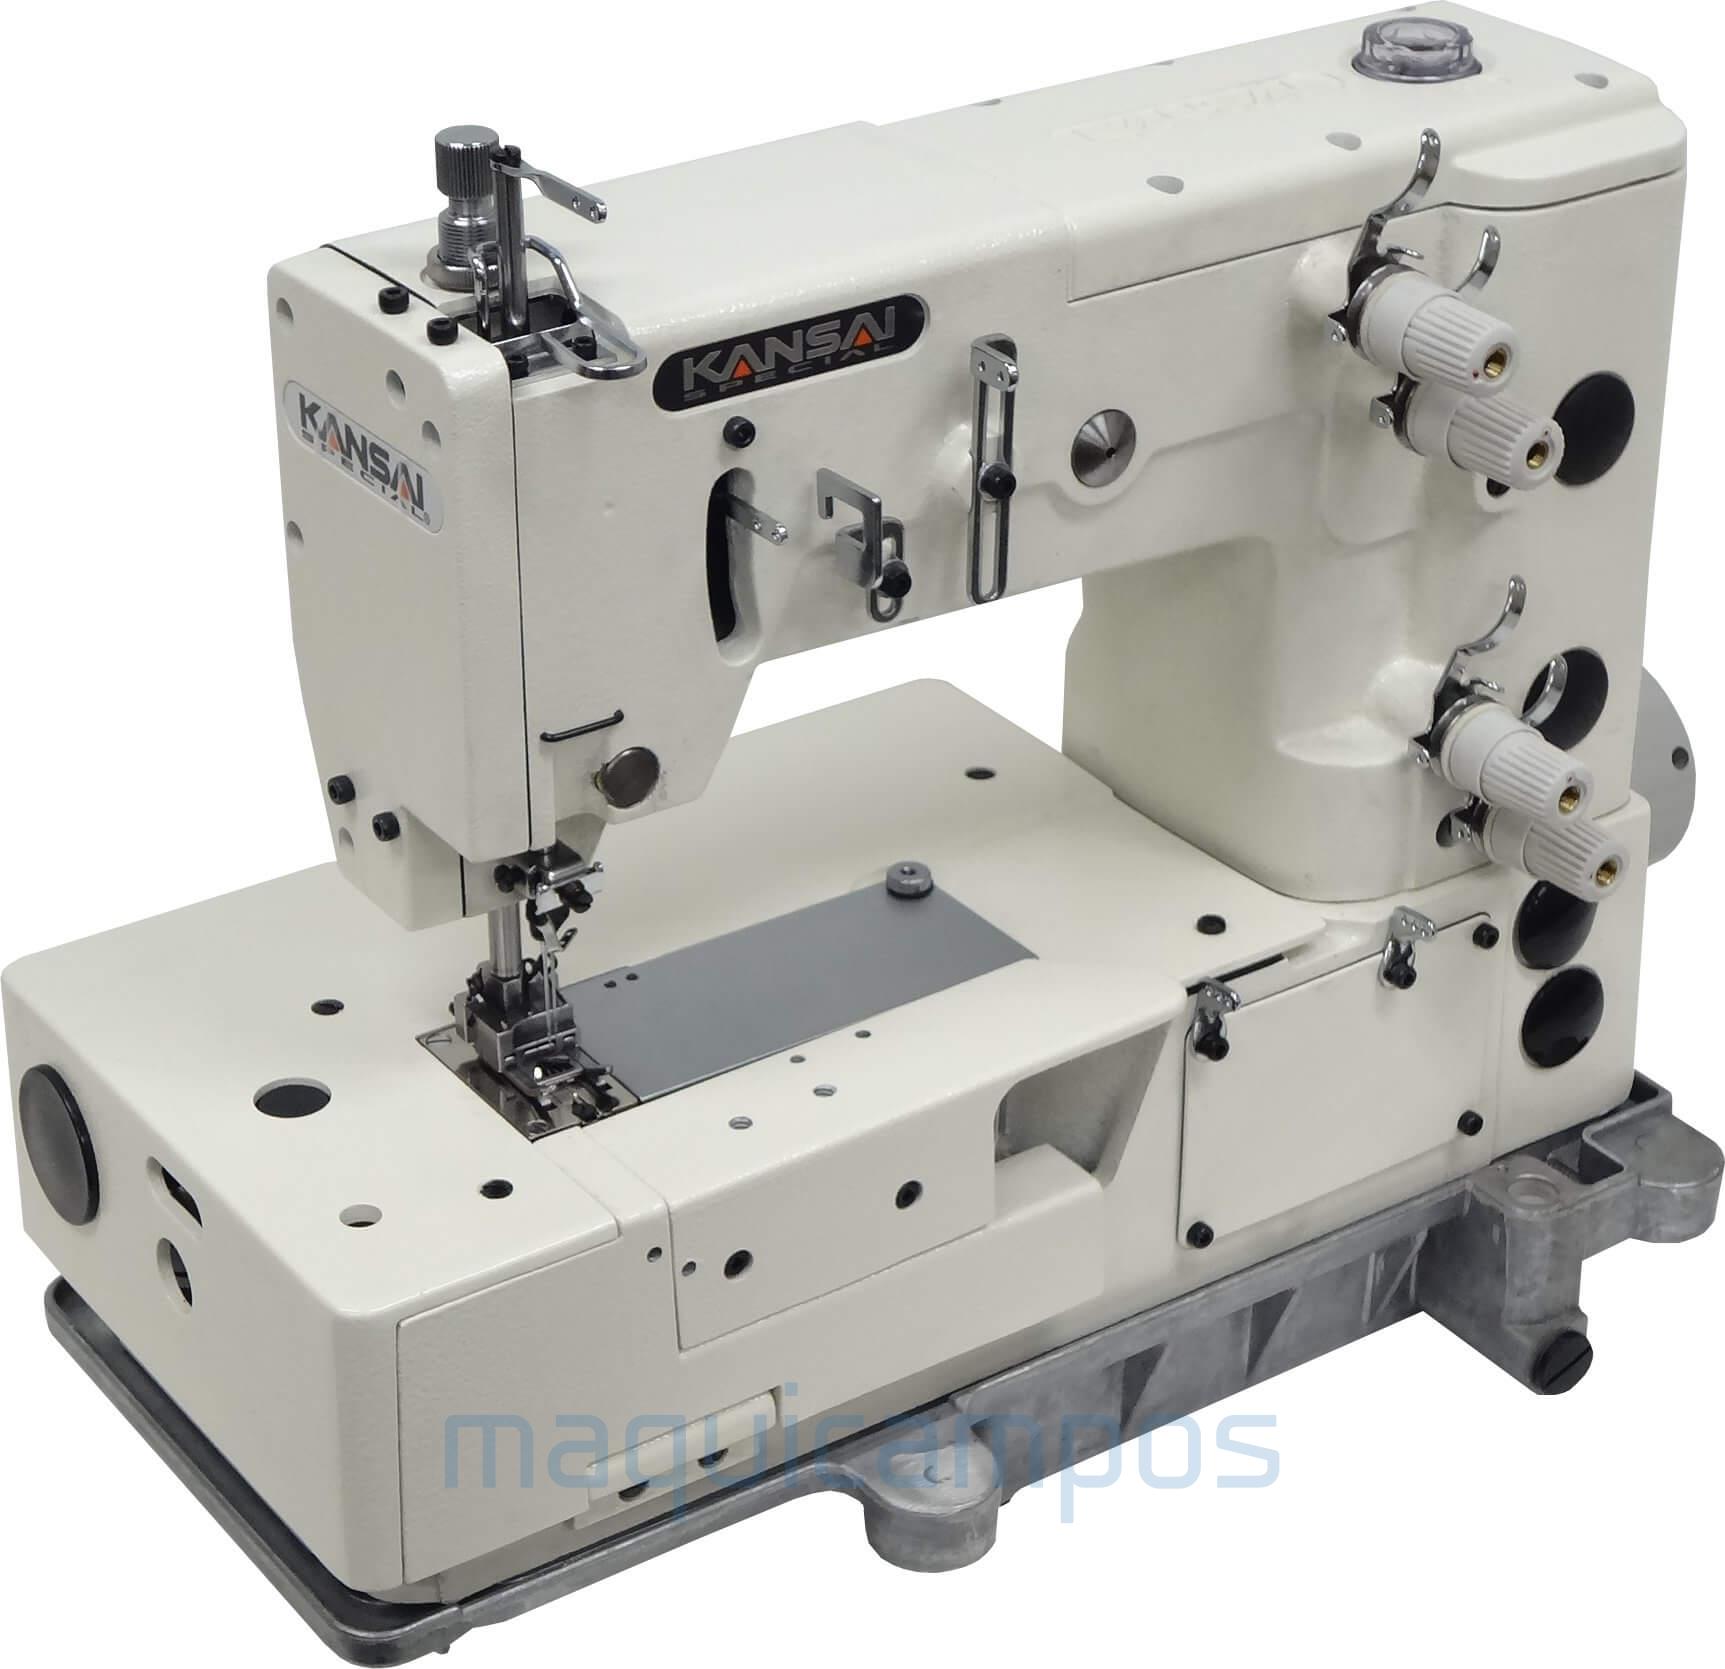 Kansai Special PX-302L-5W Decorative Stitch Sewing Machine